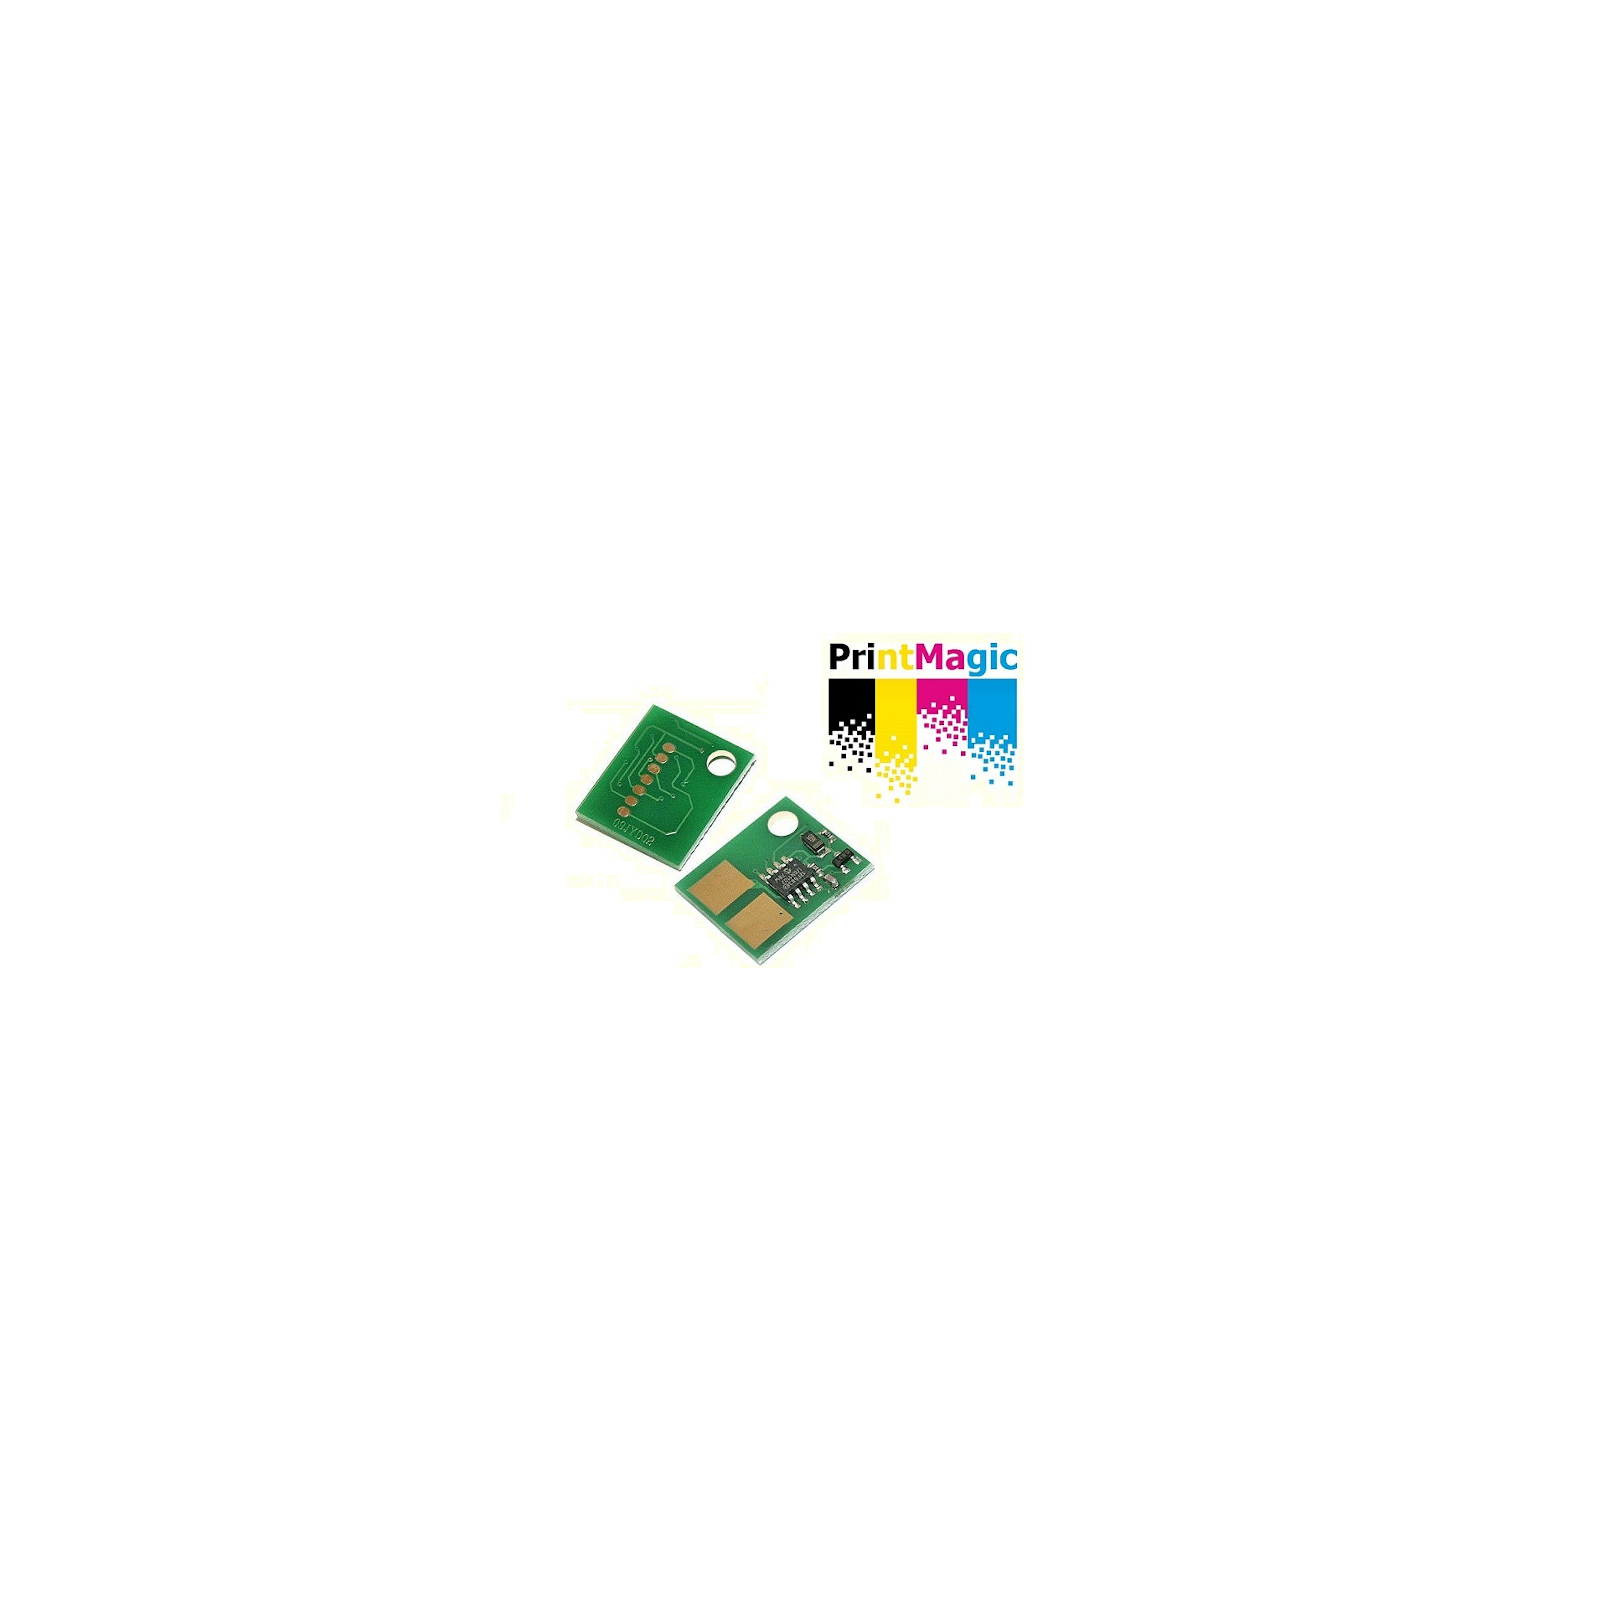 Чип для картриджа Kyocera TK-8115 [6K] Yellow PrintMagic (CPM-TK8115Y)